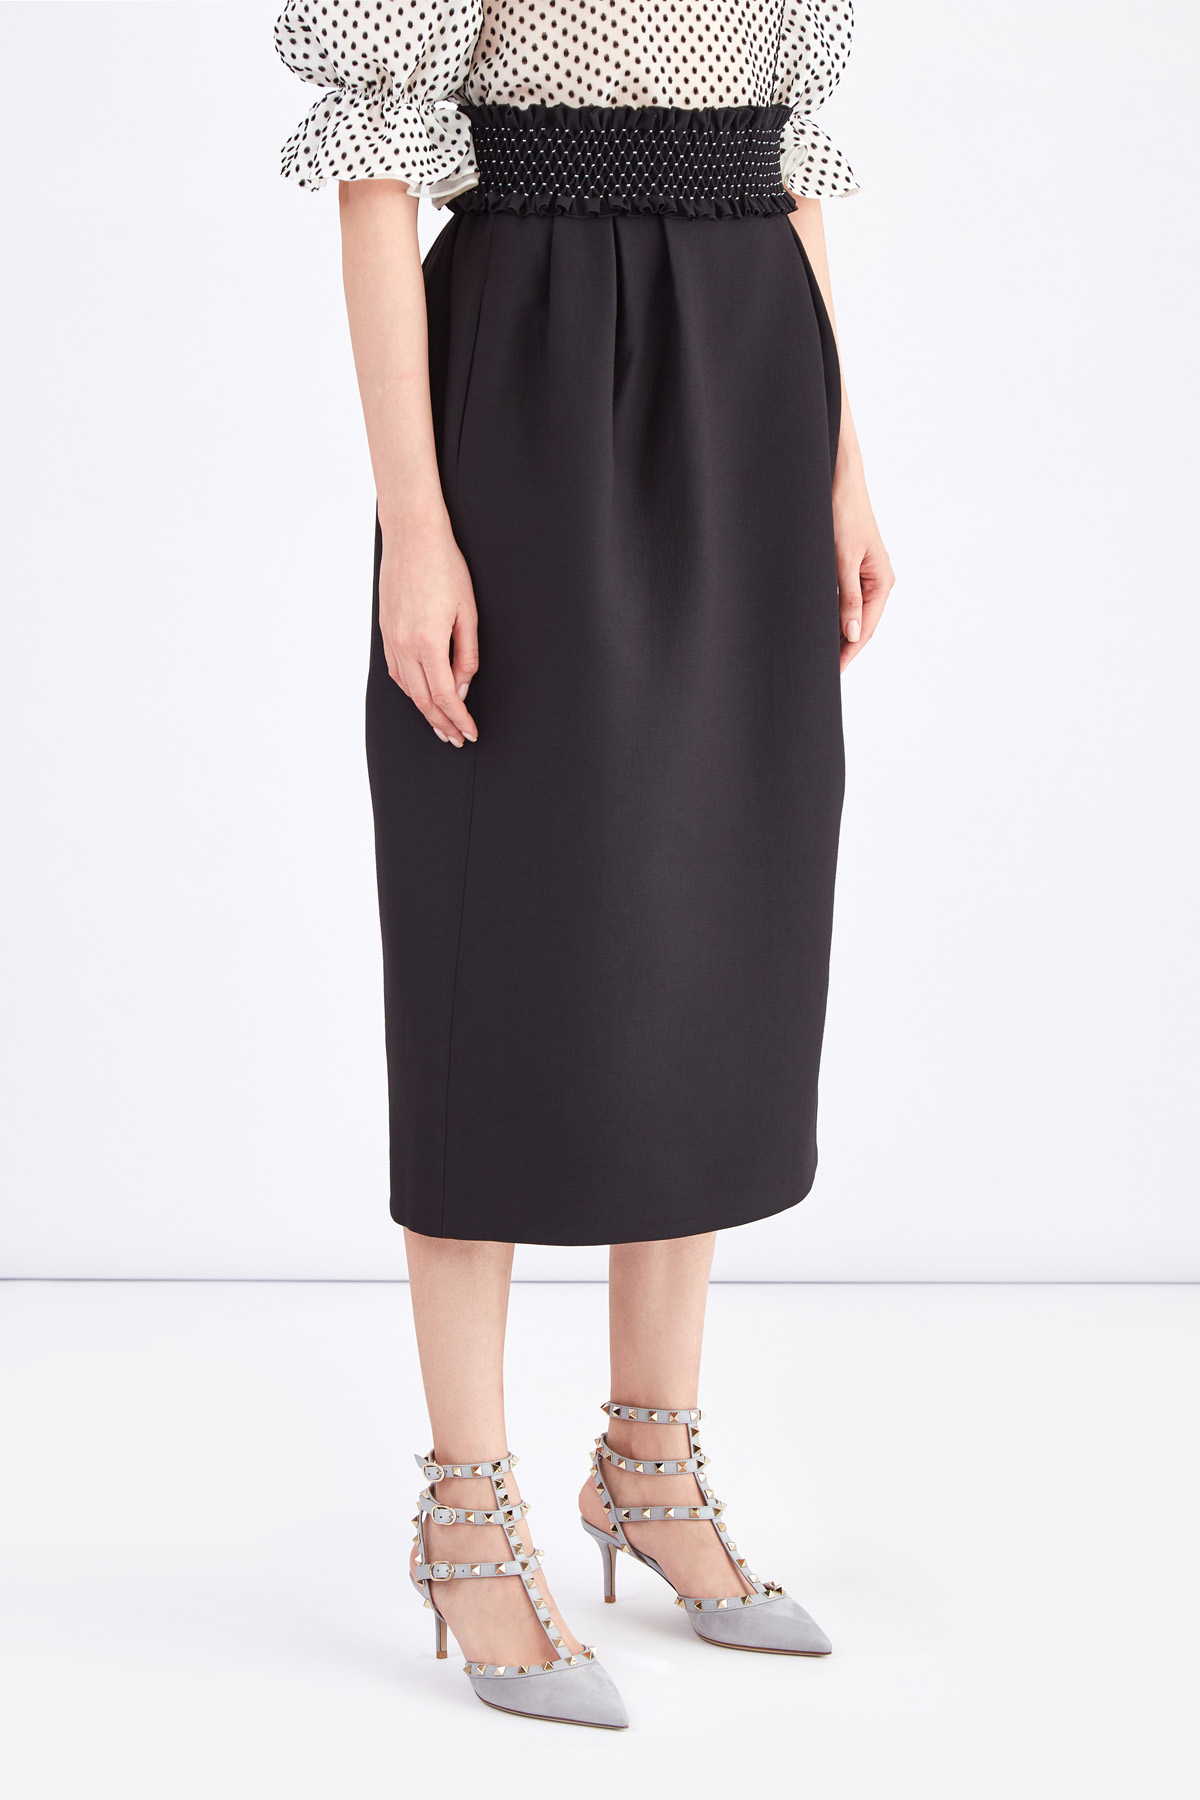 Черная юбка-колокол длины миди с фактурным поясом ручной отделки VALENTINO, цвет черный, размер 42 - фото 3